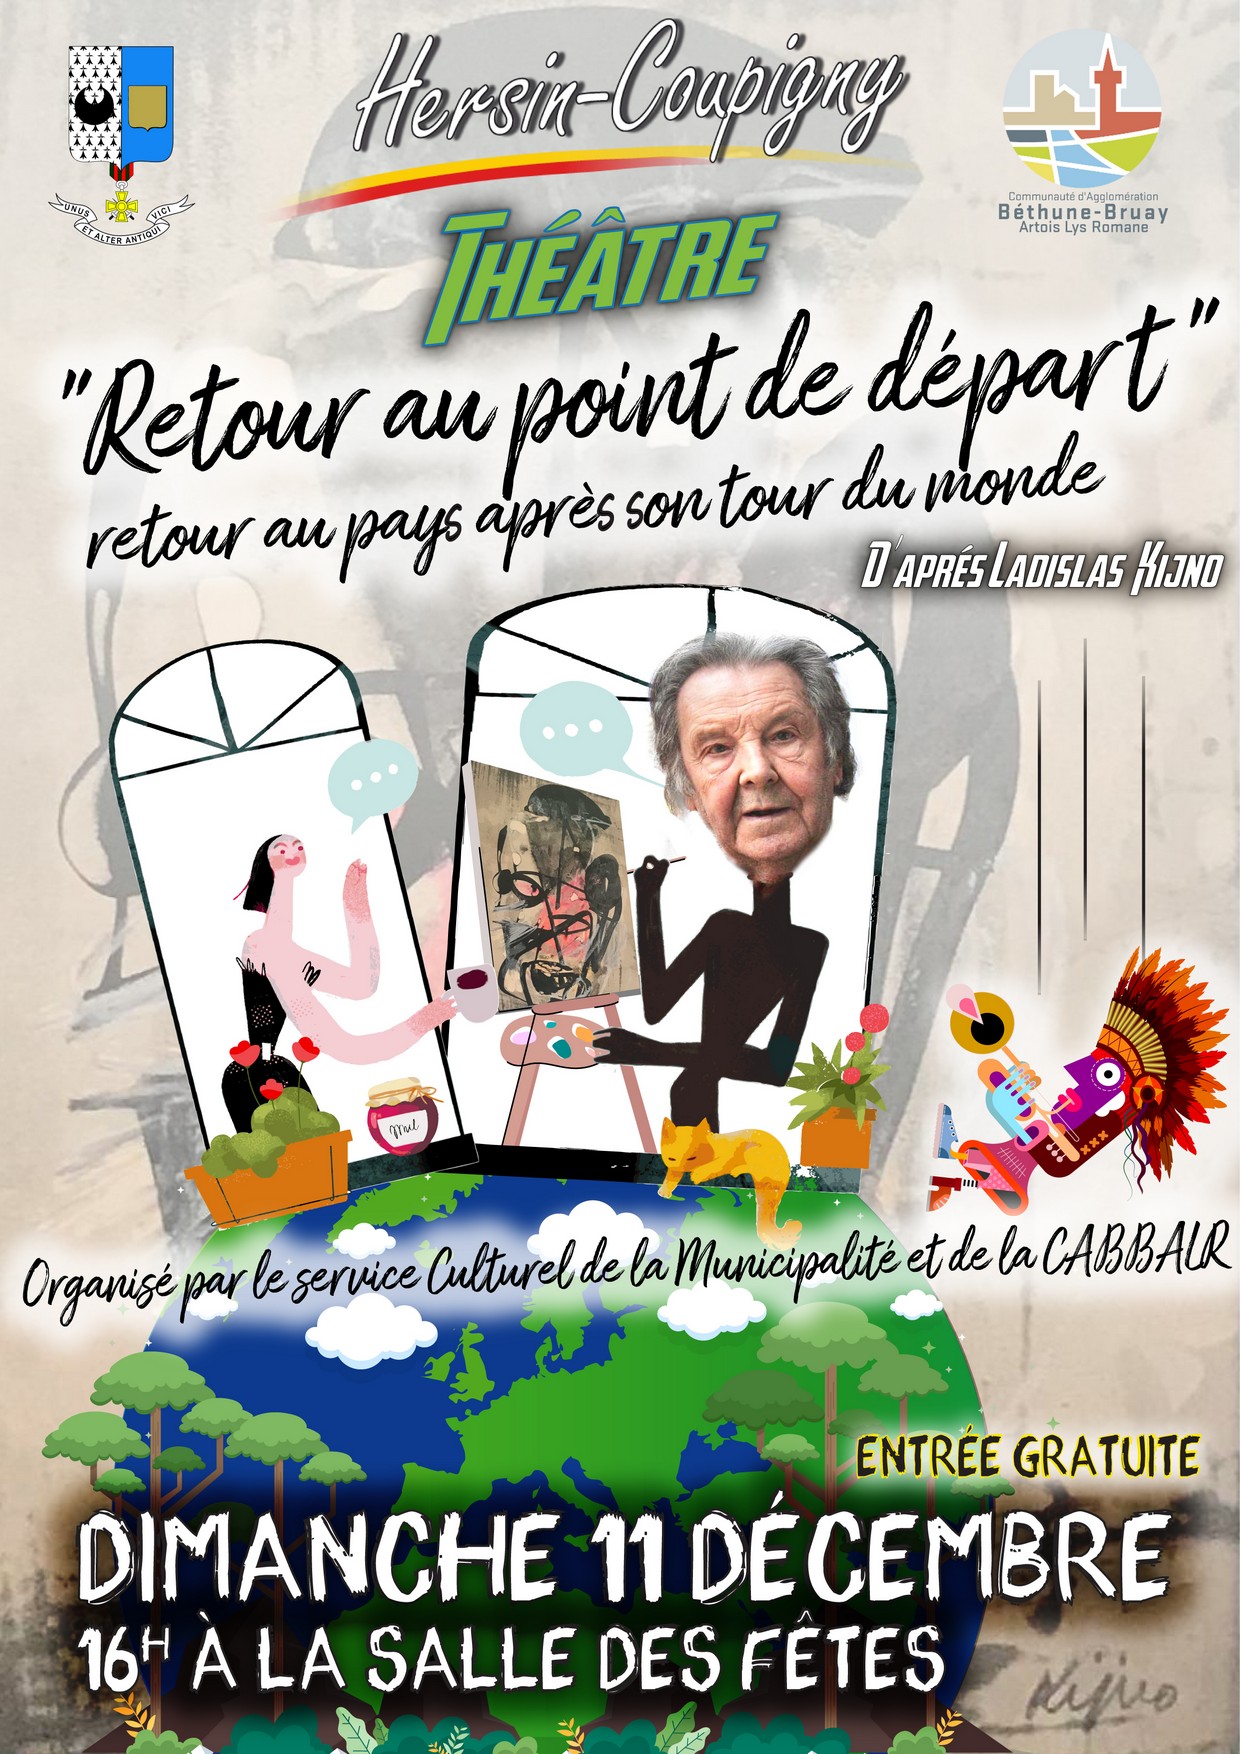 Théâtre : "Retour au point de départ" @ Salle des Fêtes | Hersin-Coupigny | Hauts-de-France | France